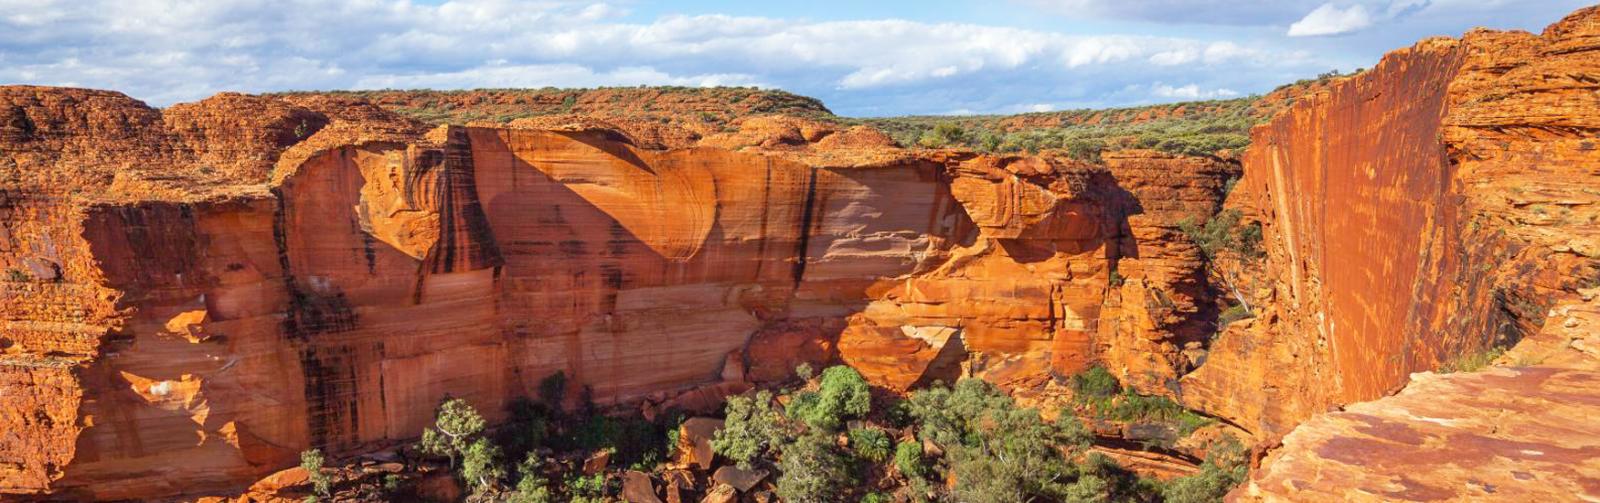 Two Week Darwin to Uluru Road Trip Itinerary